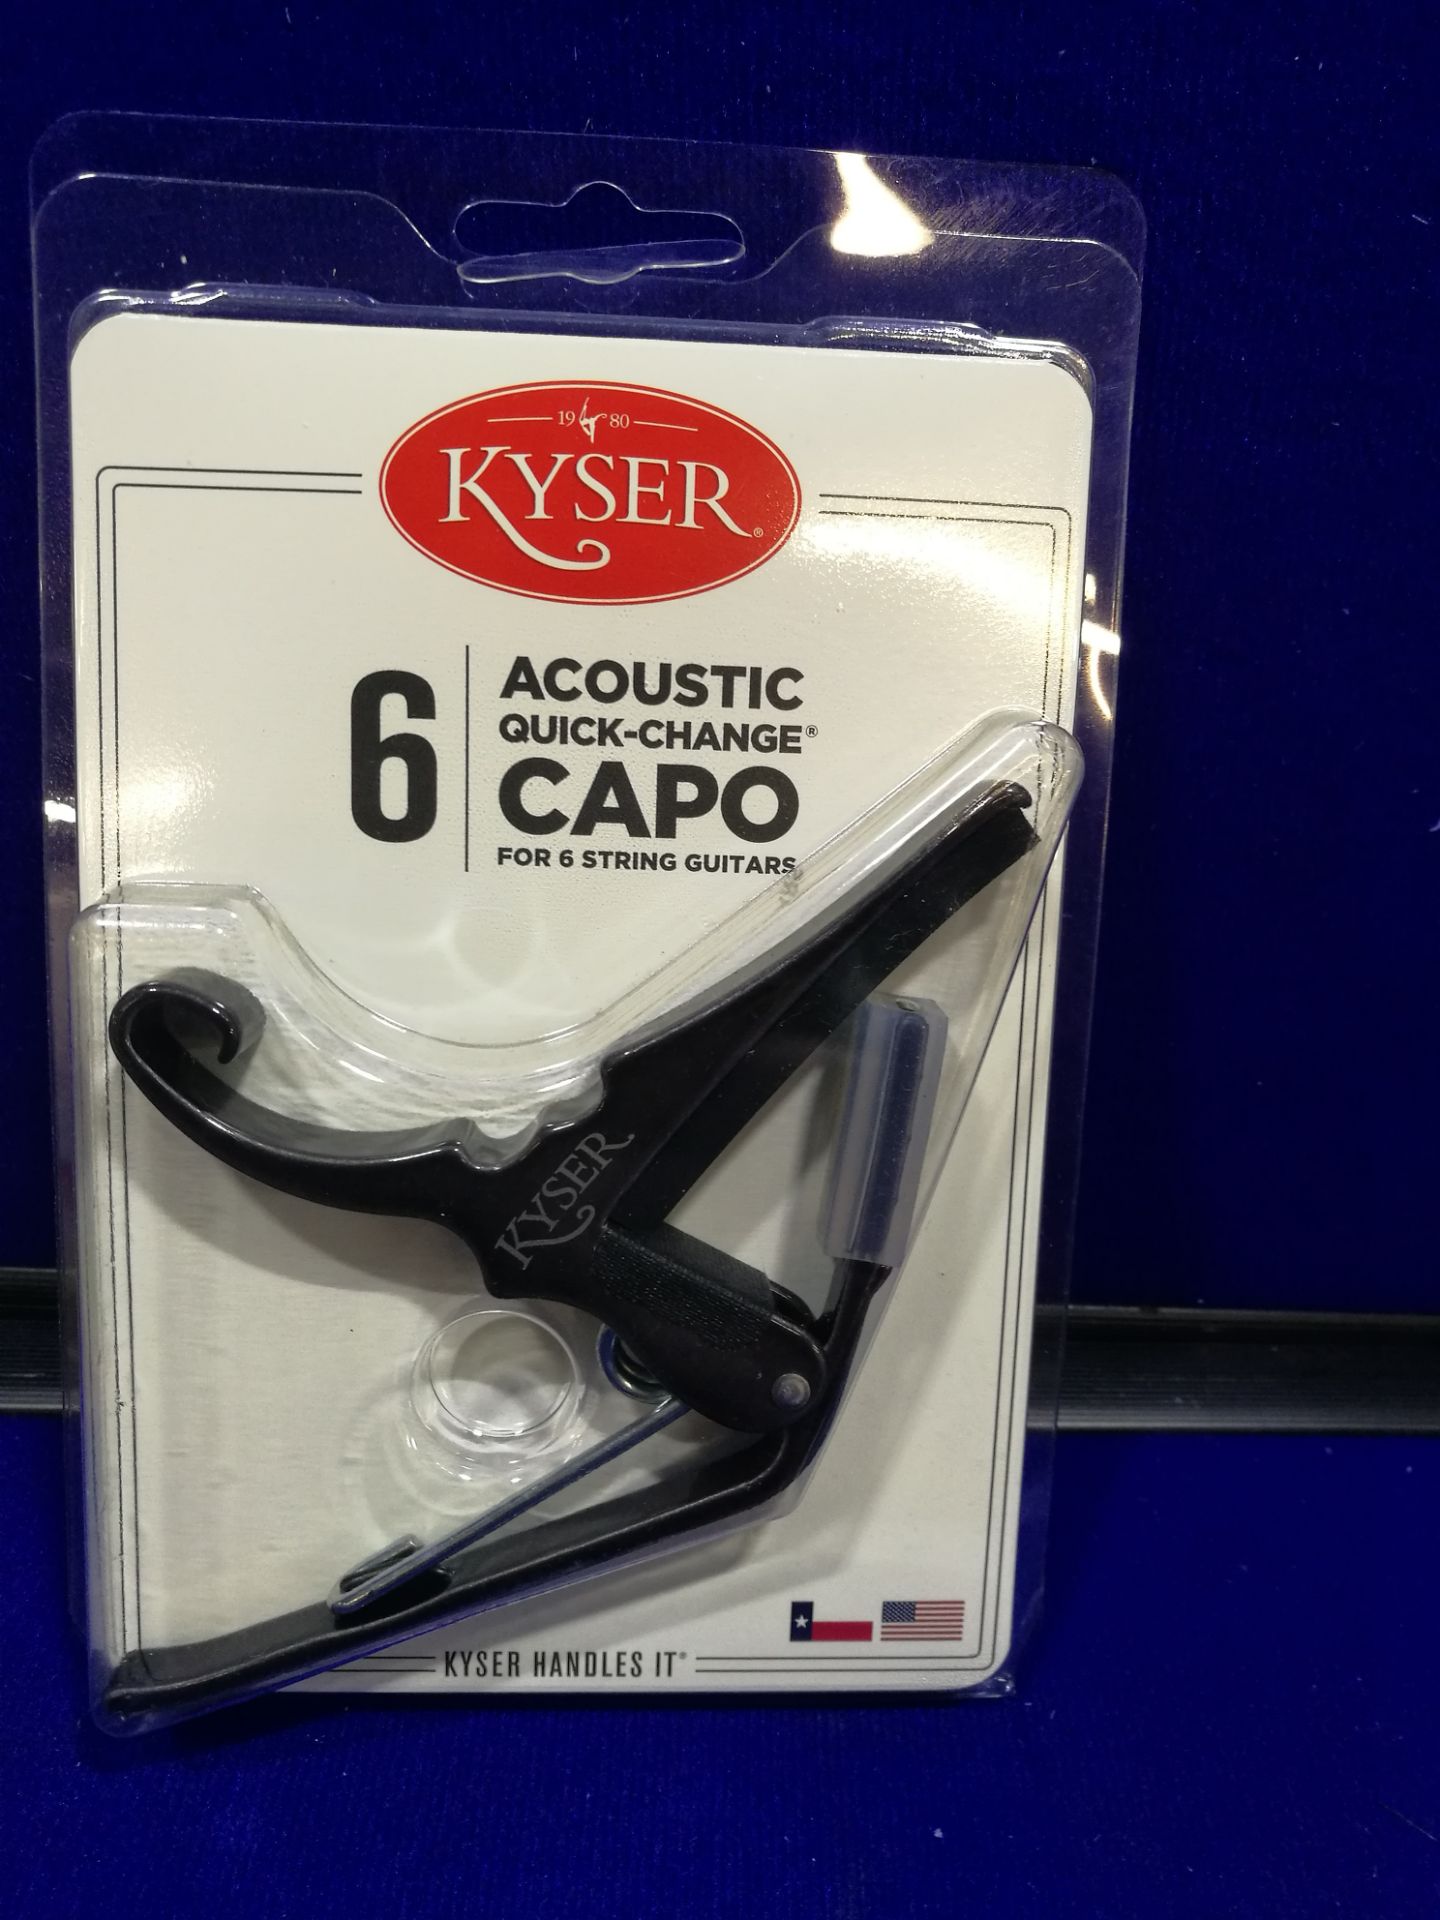 Kyser Quick Change Capo - Acoustic, Black Chrome - KG6BCA